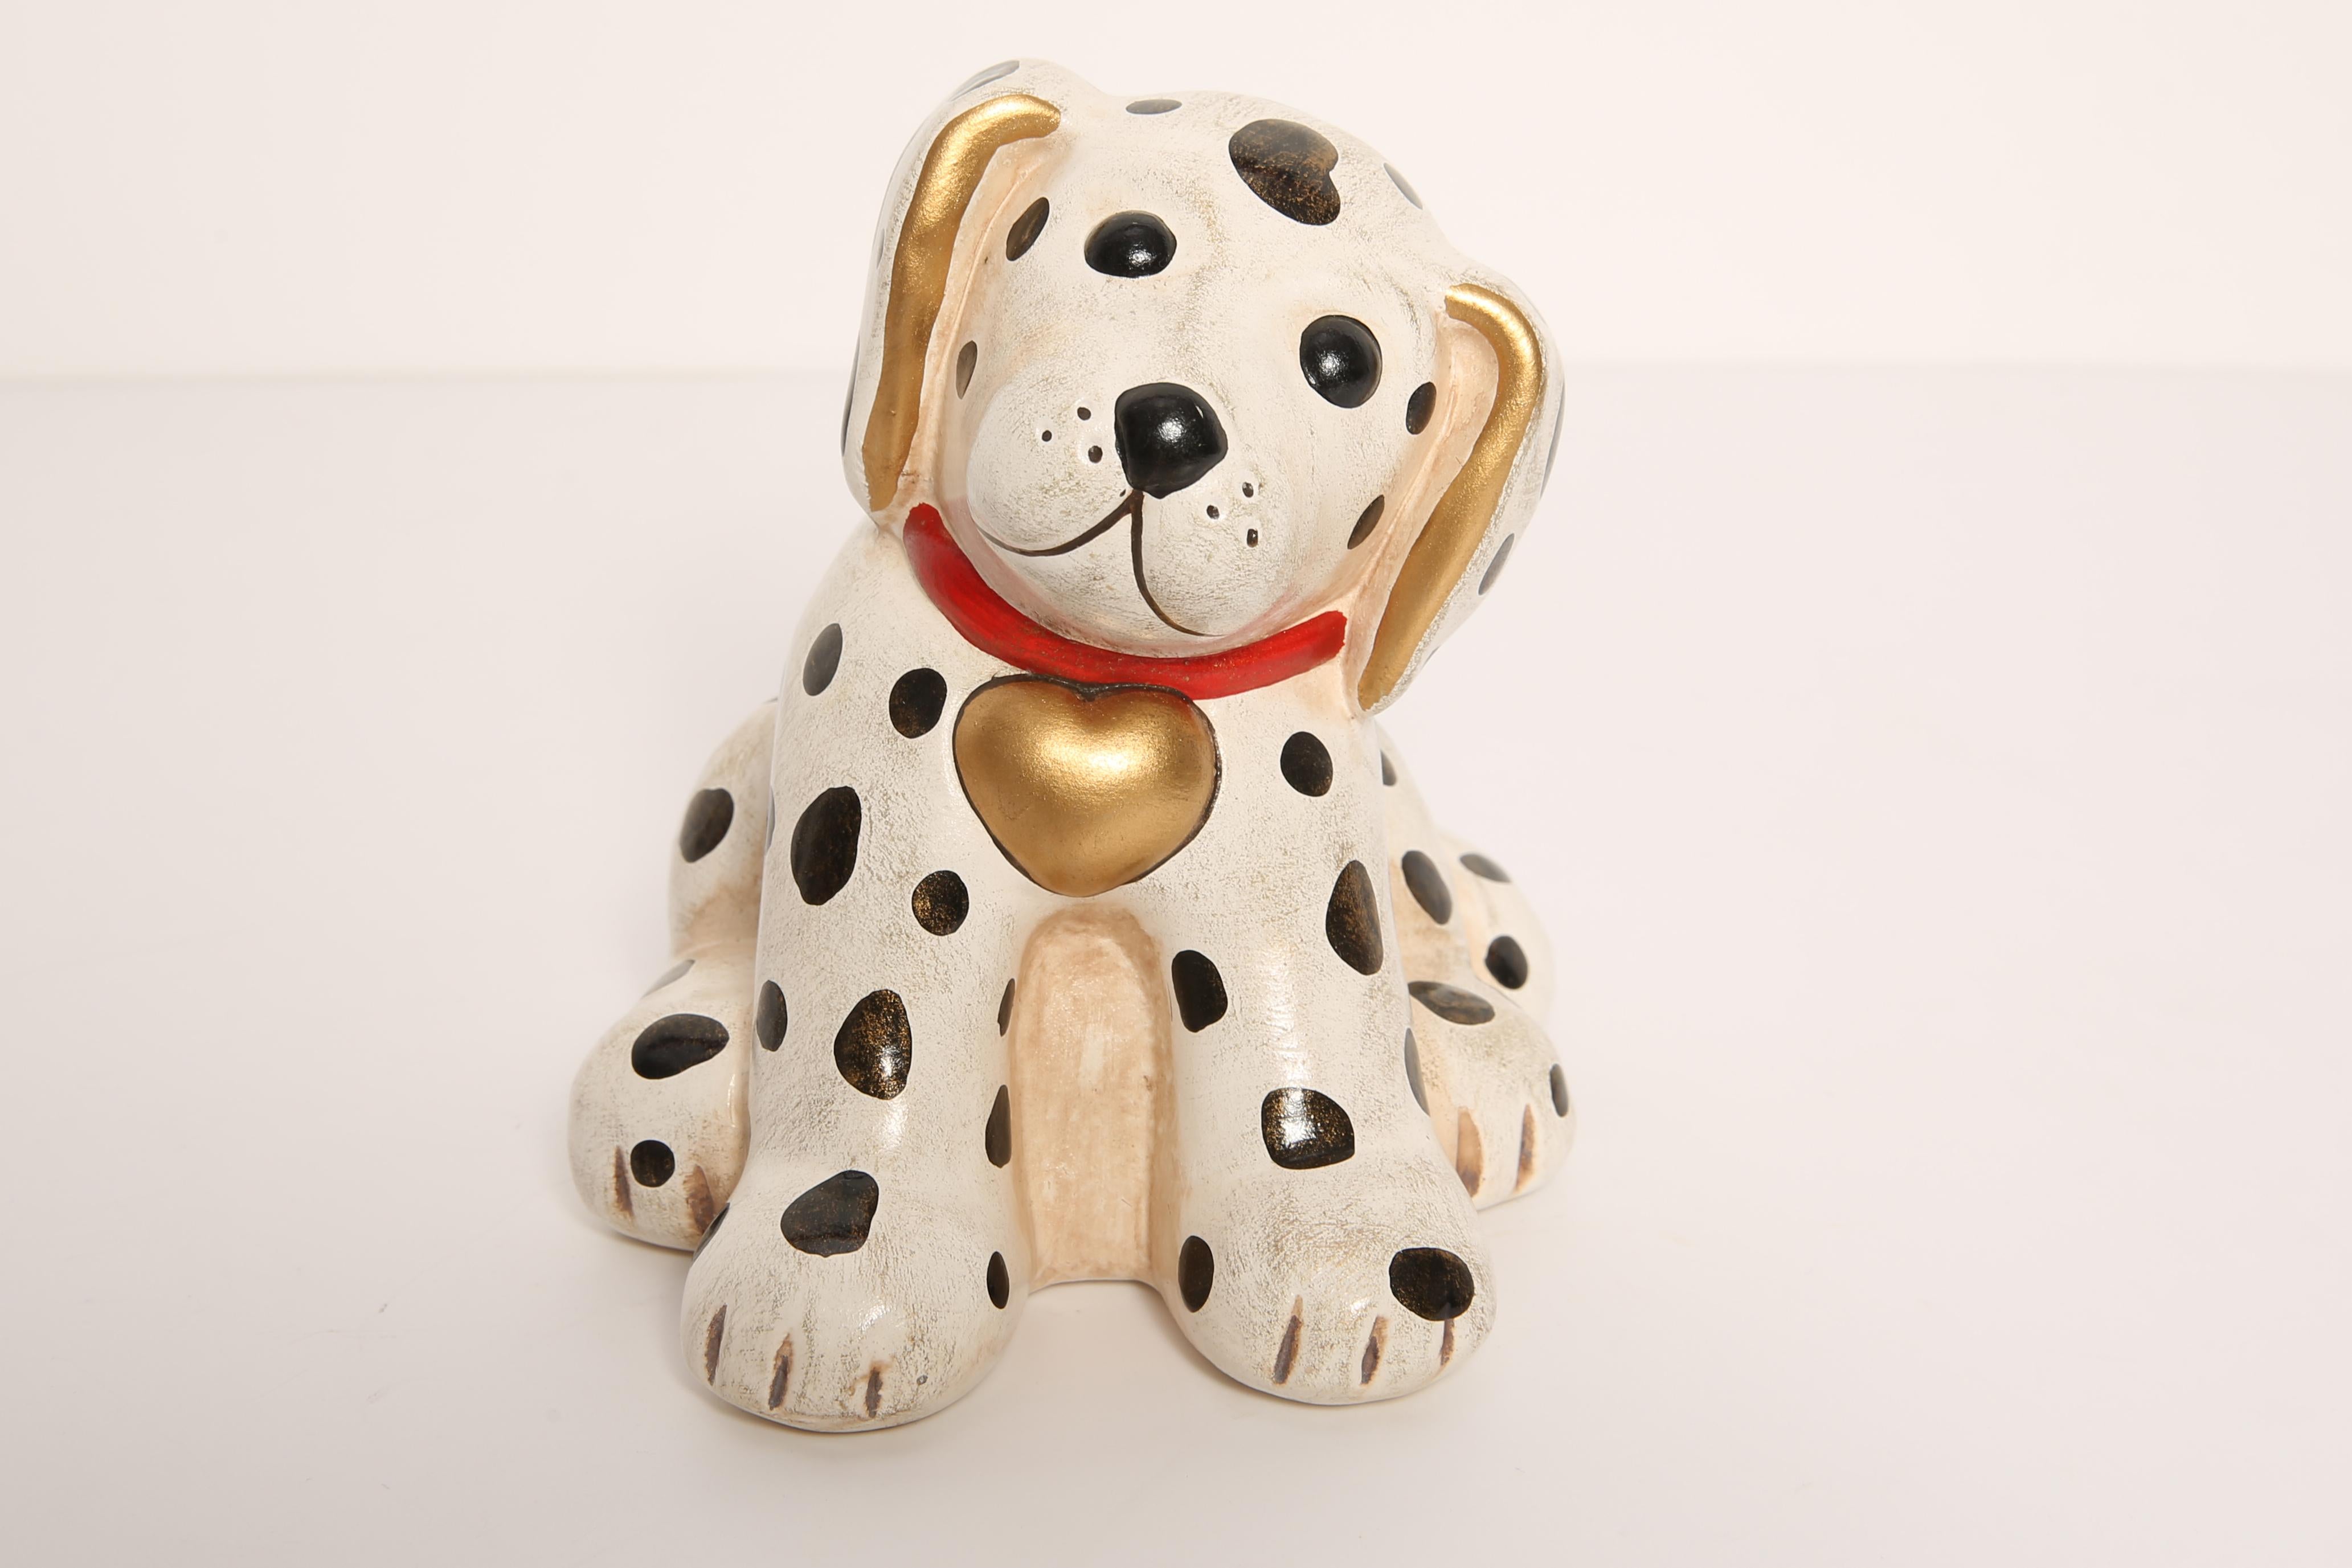 Bemalte Keramik, guter Originalzustand. Schöne und einzigartige dekorative Skulptur. Die Dalmatiner Hundeskulptur wurde von der Firma Thun in Italien hergestellt.